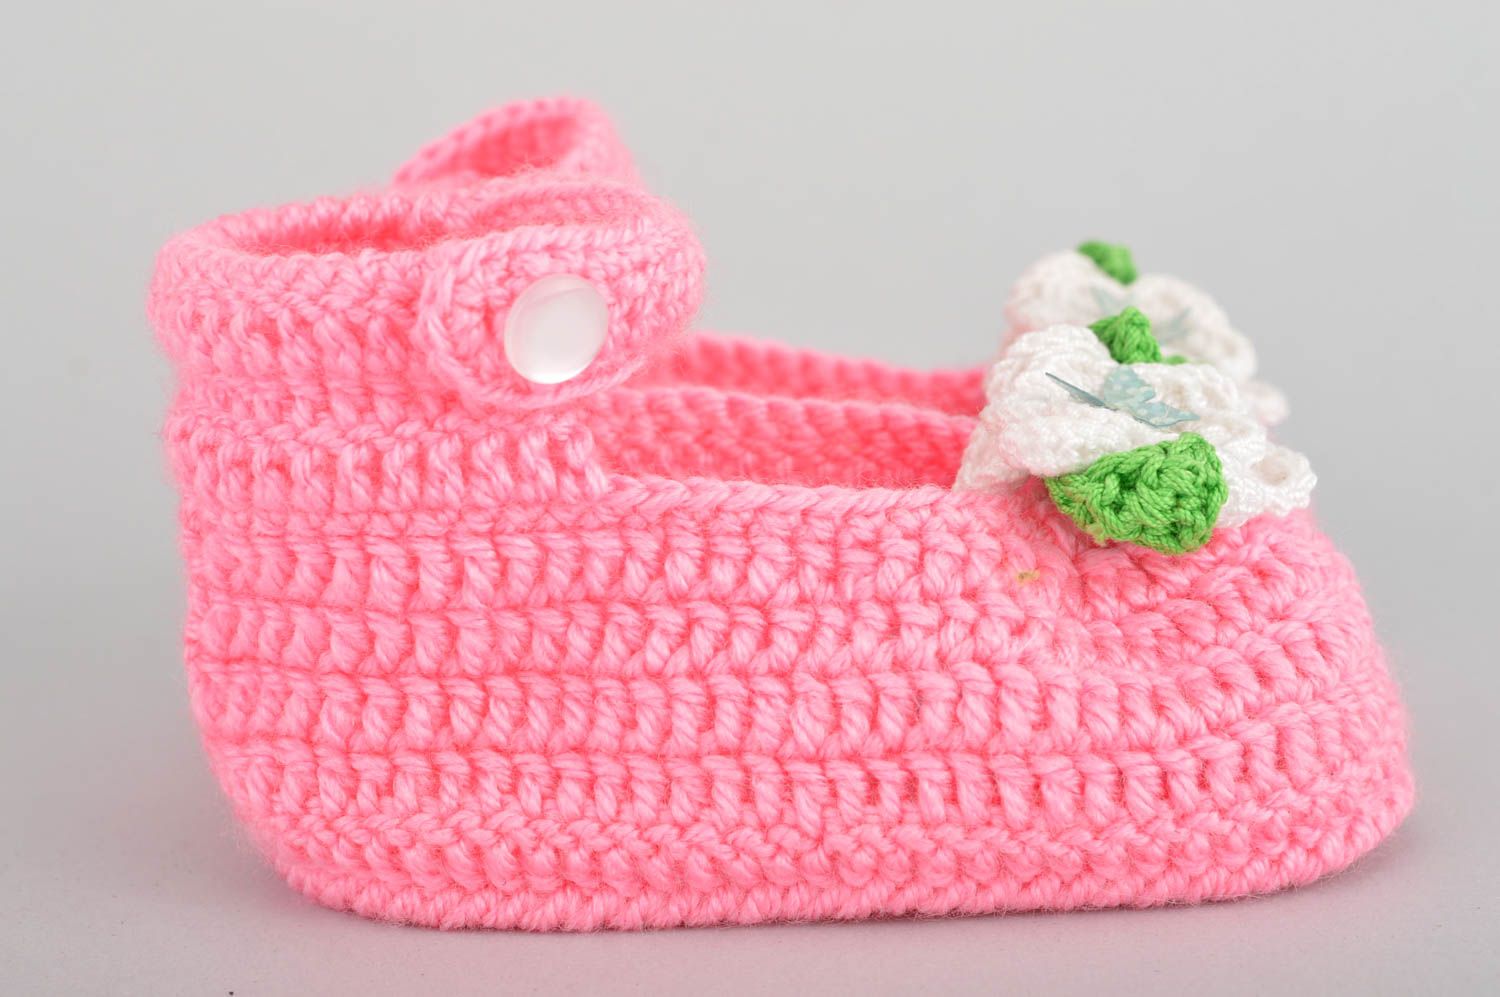 Chaussons de bébé tricotés en coton au crochet faits main roses pour fille photo 3